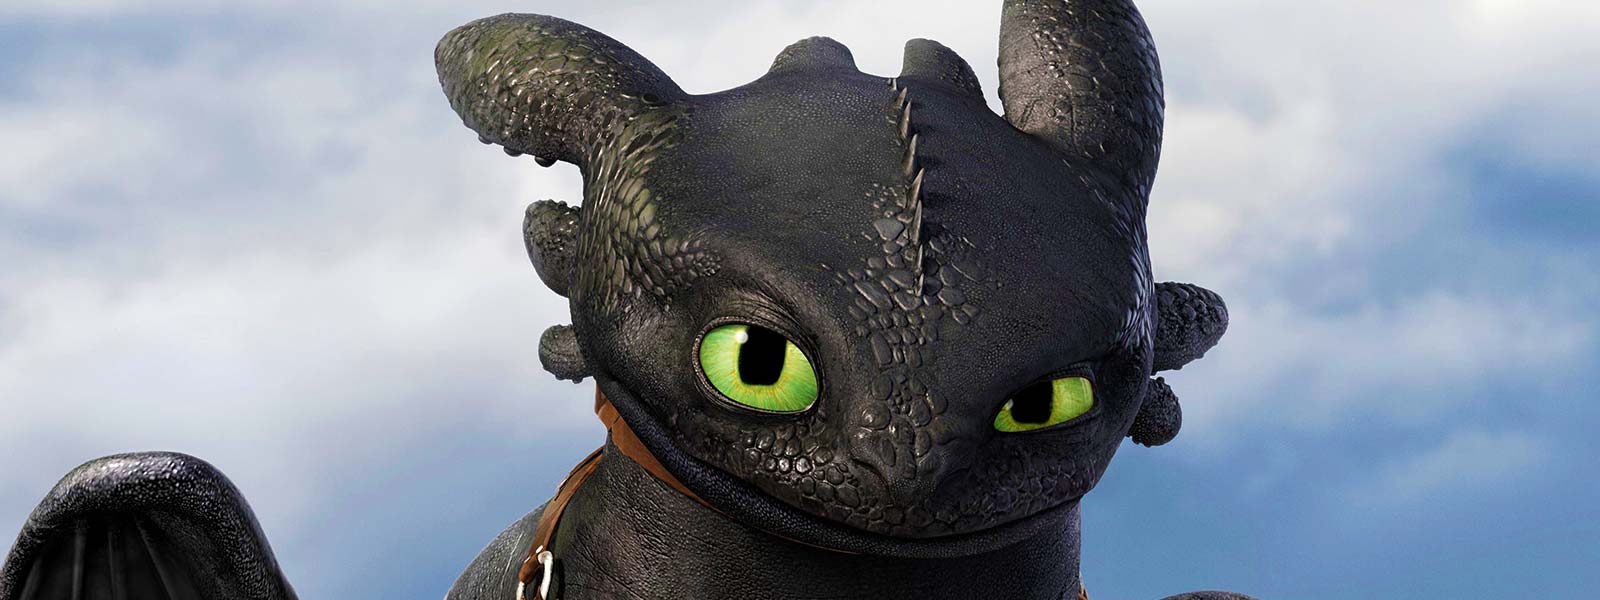 Krokmou : Tout connaitre sur votre dragon préféré 